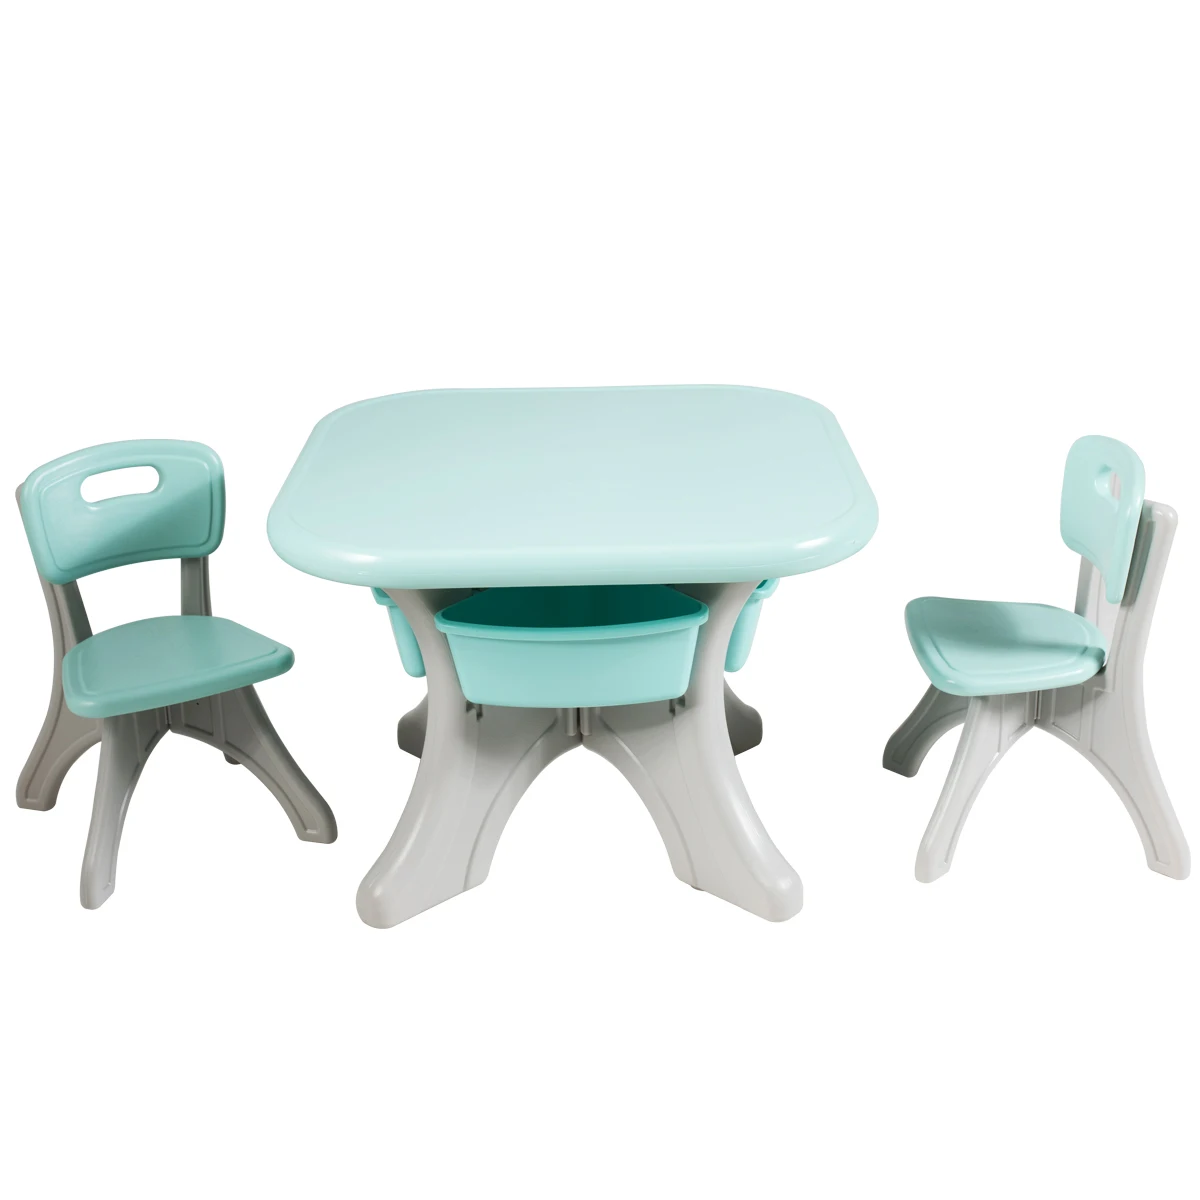 Children Kids Activity Table & Chair Set Play Furniture W/Storage Garden/Indoor